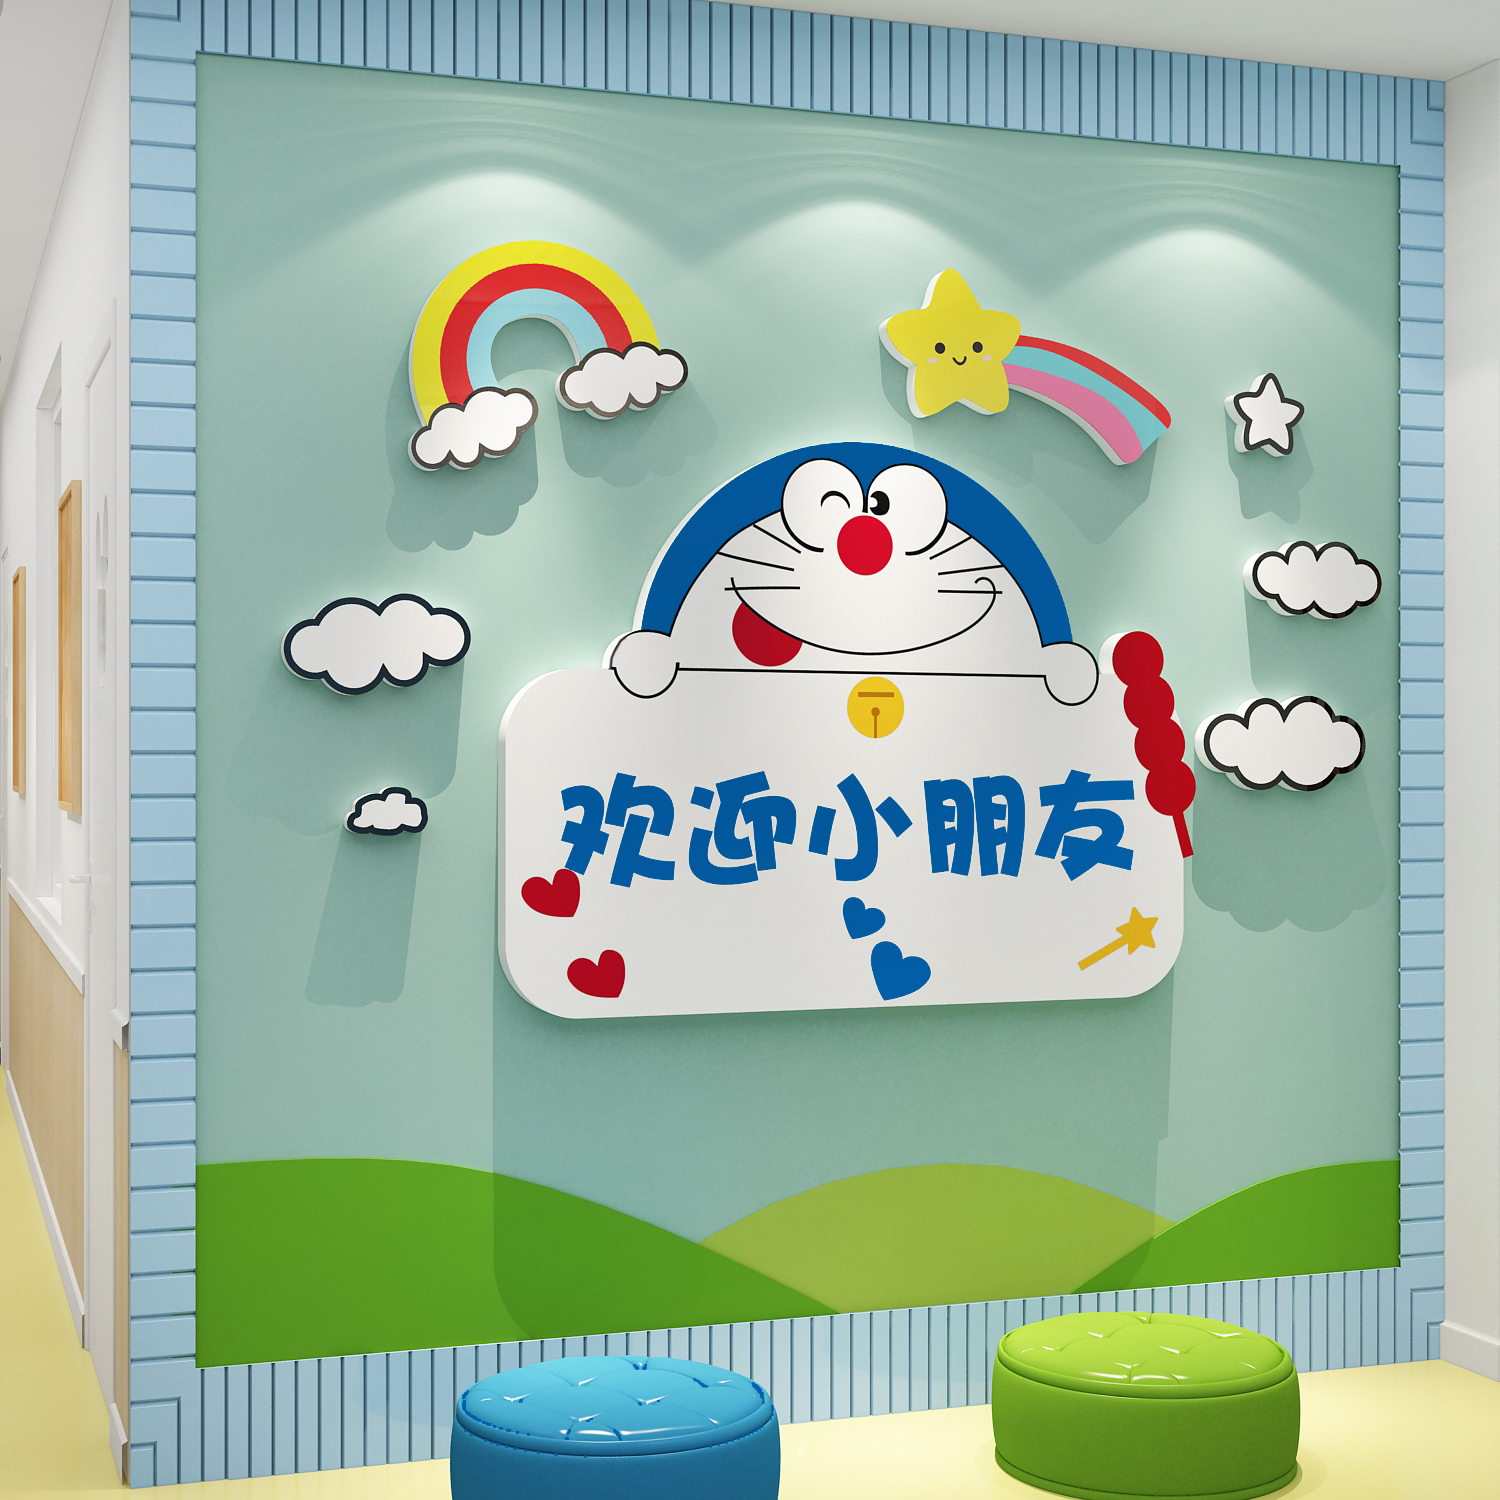 哆啦a梦幼儿园欢迎小朋友墙面贴装饰成品走廊布置主题环创境材料